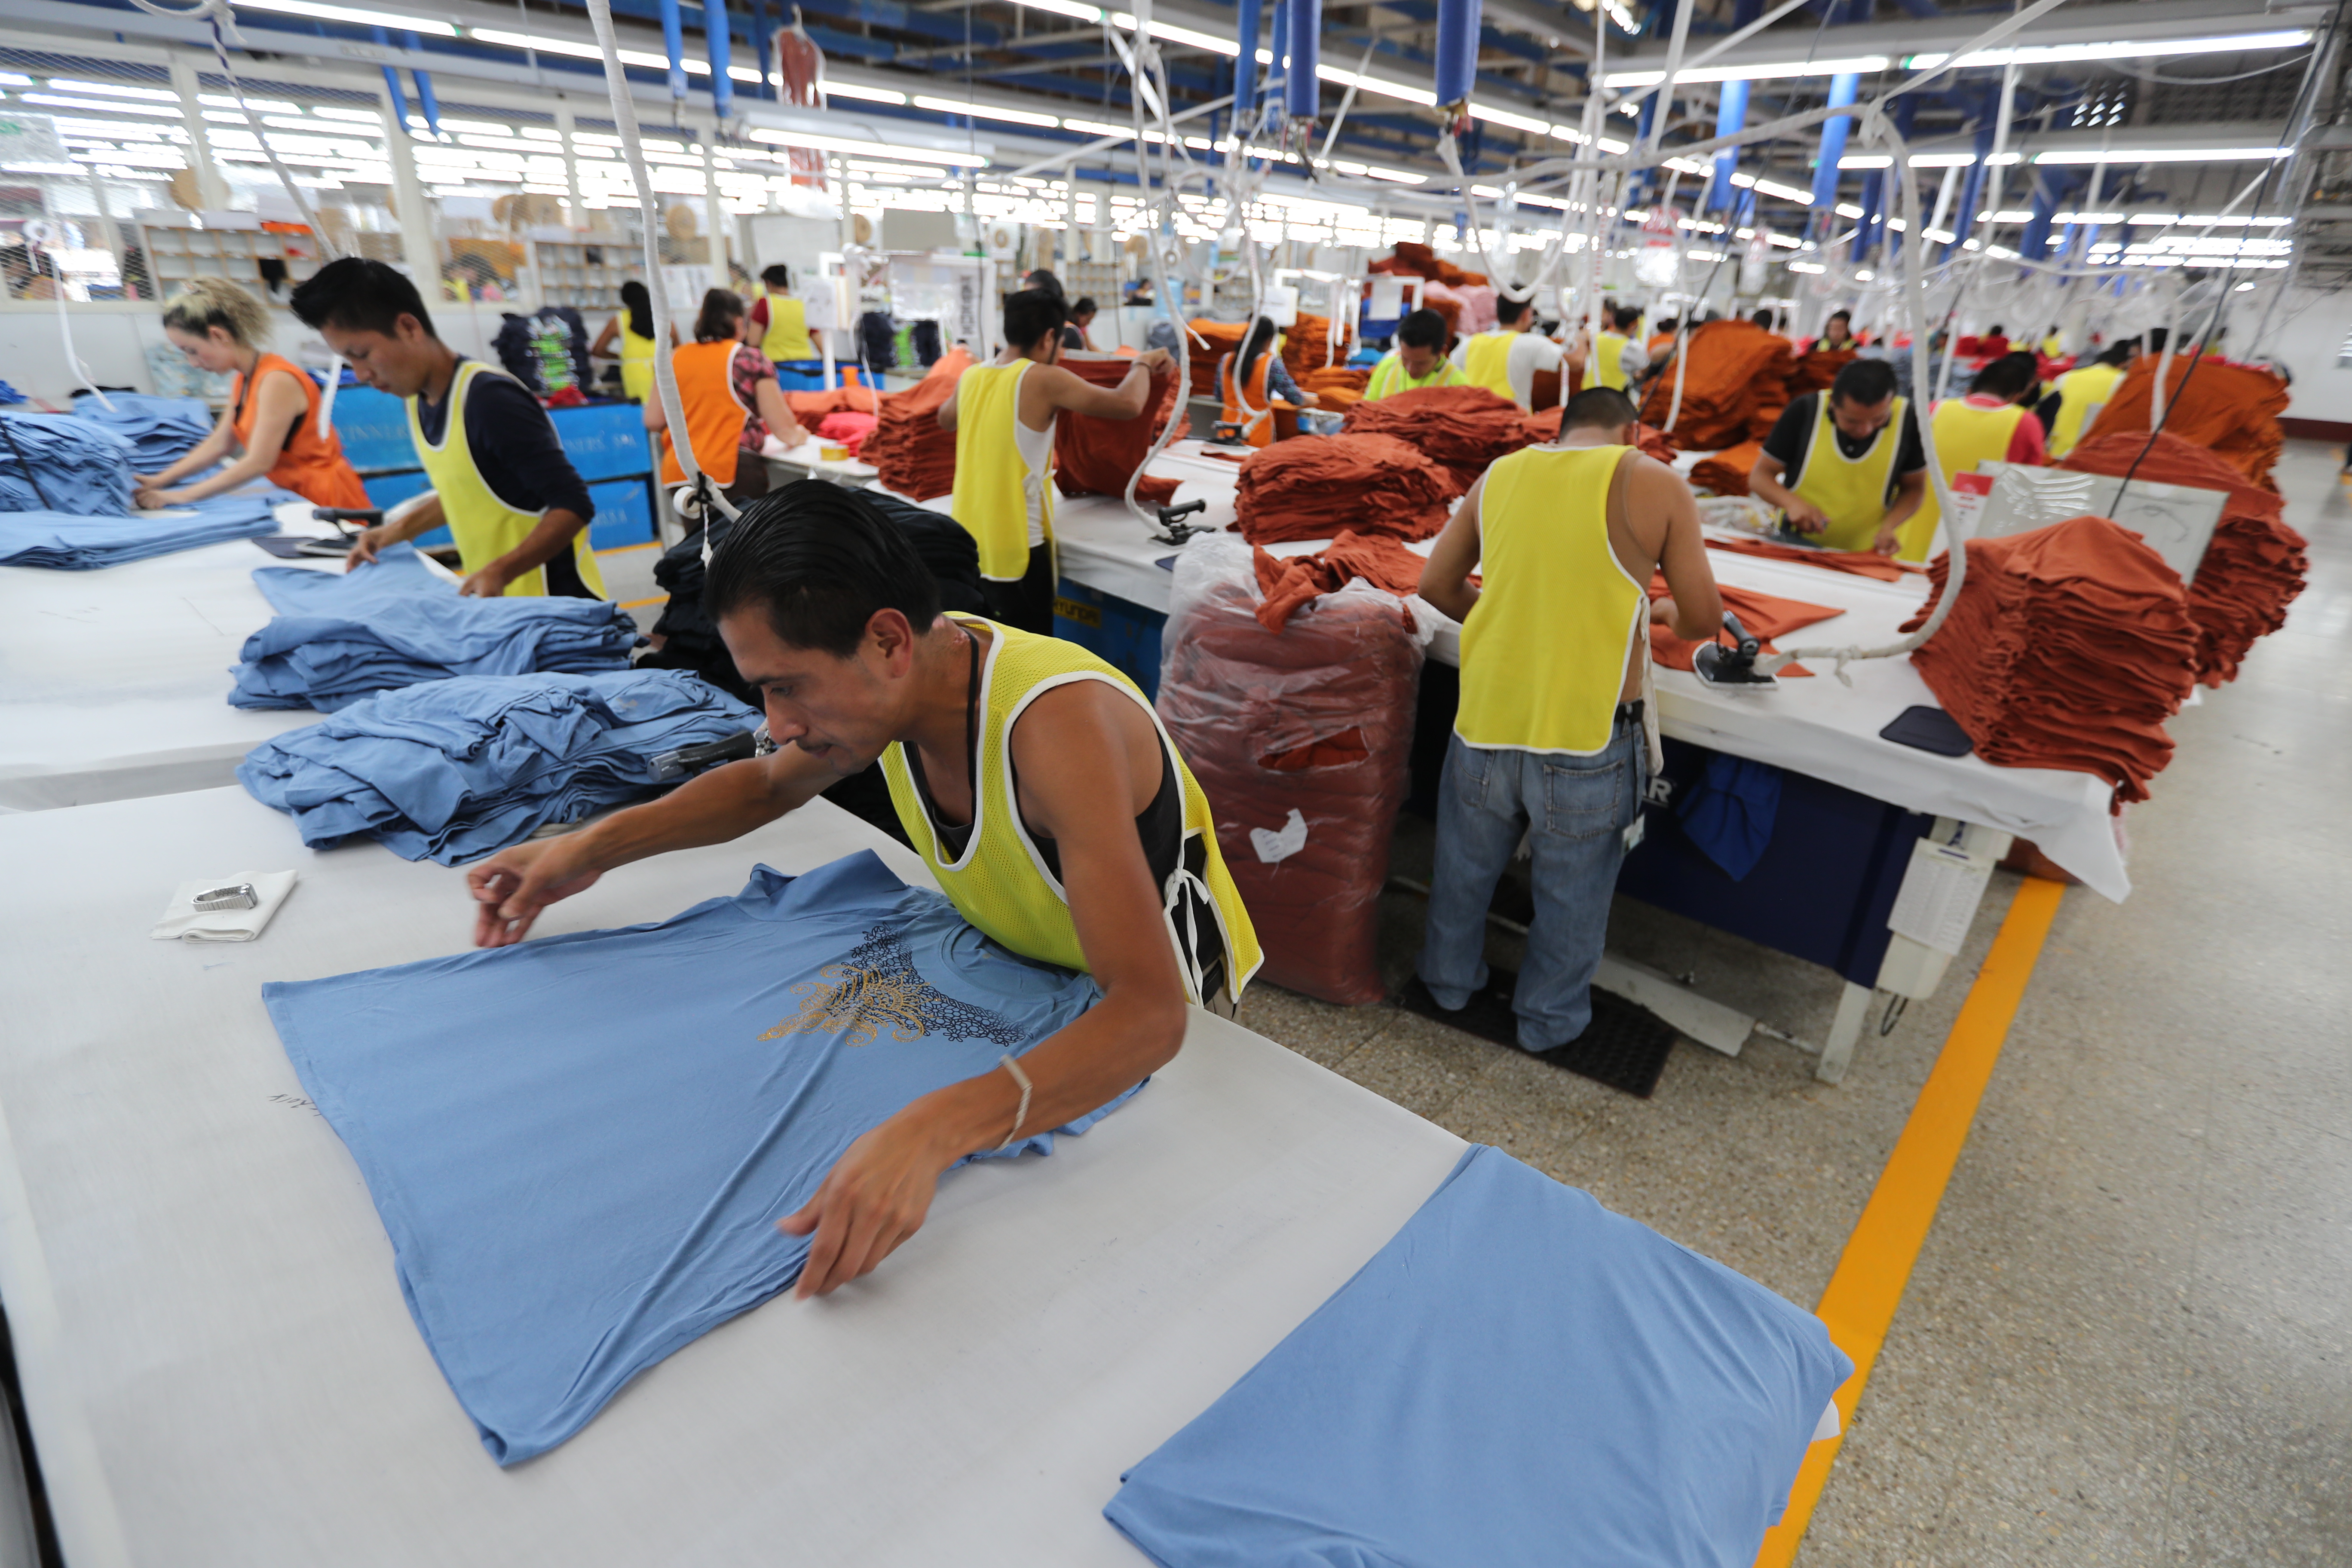 El 70% del mercado laboral se encuentra en la economía informal y el 30%, en la   formal, según los representantes del sector empleador en la CNS. (Foto Prensa Libre: Hemeroteca)